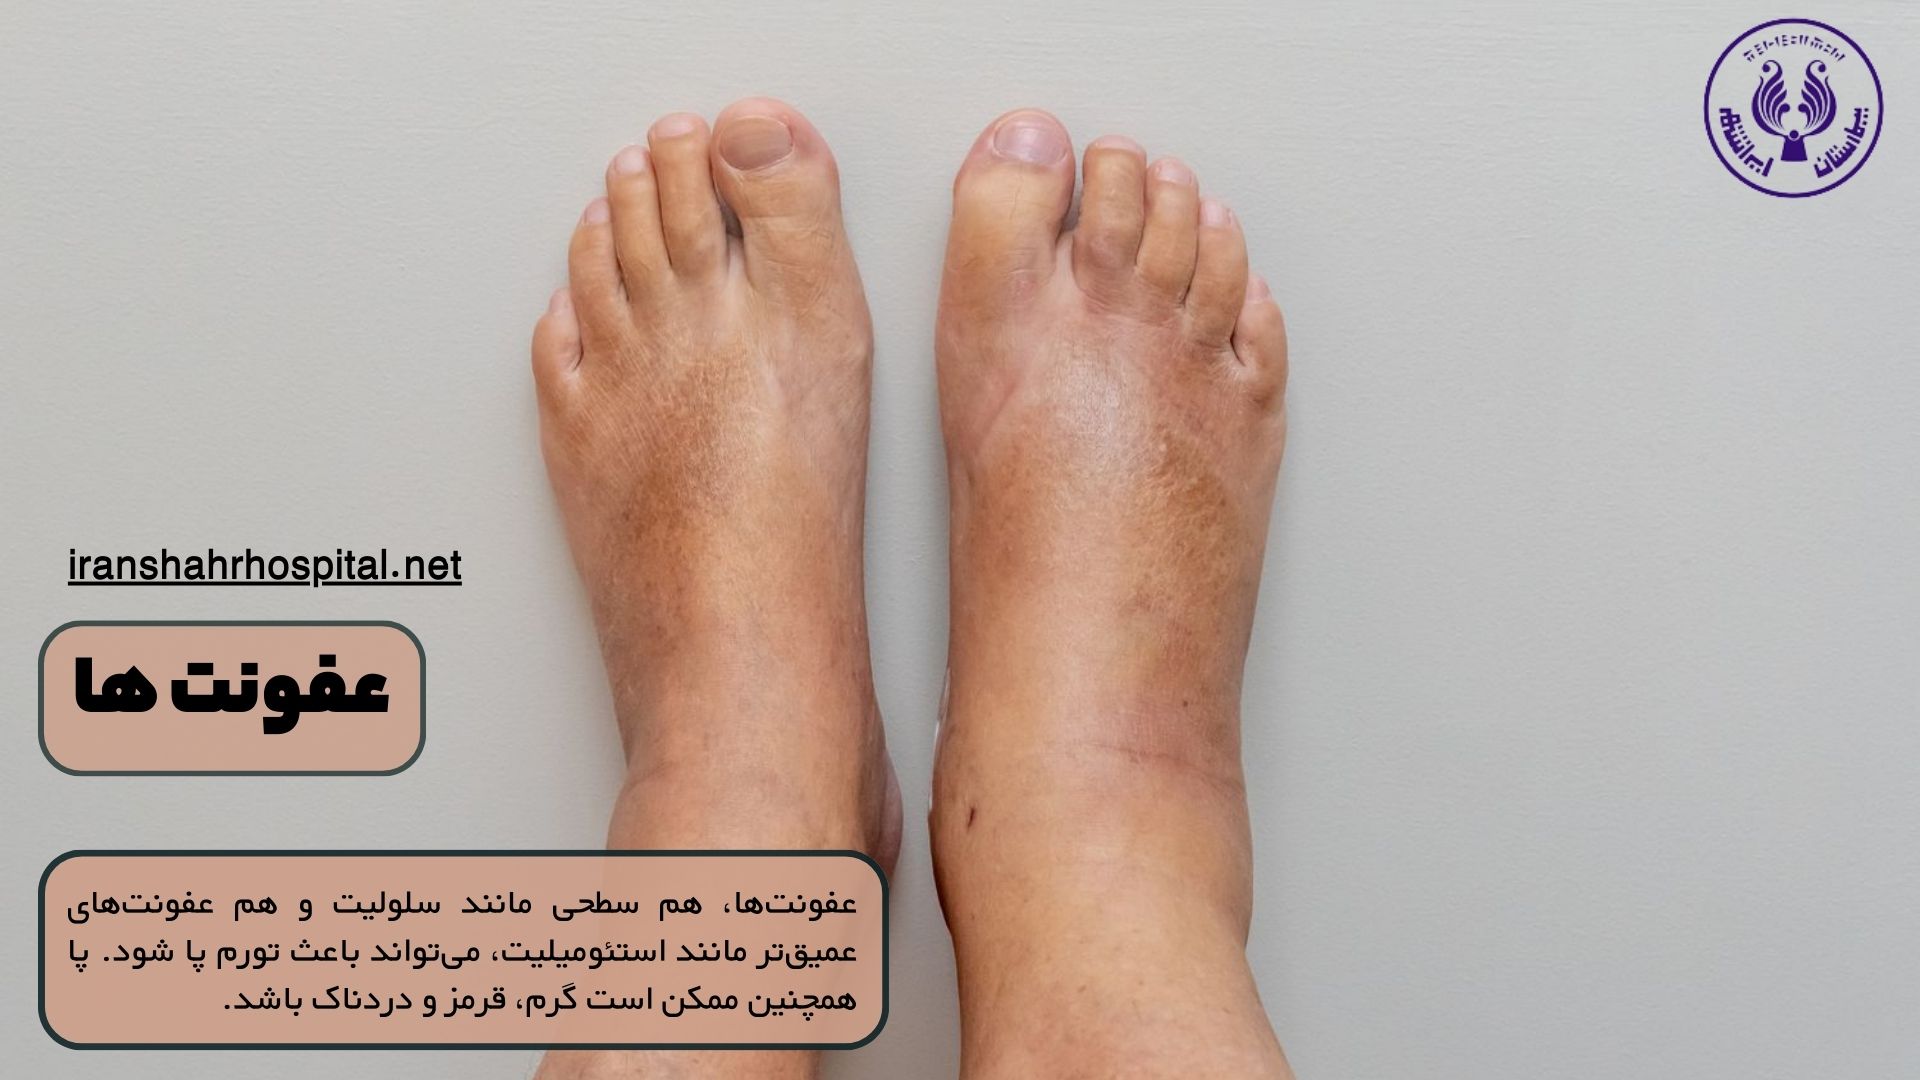 علت ورم پای راست چیست: عفونت ها